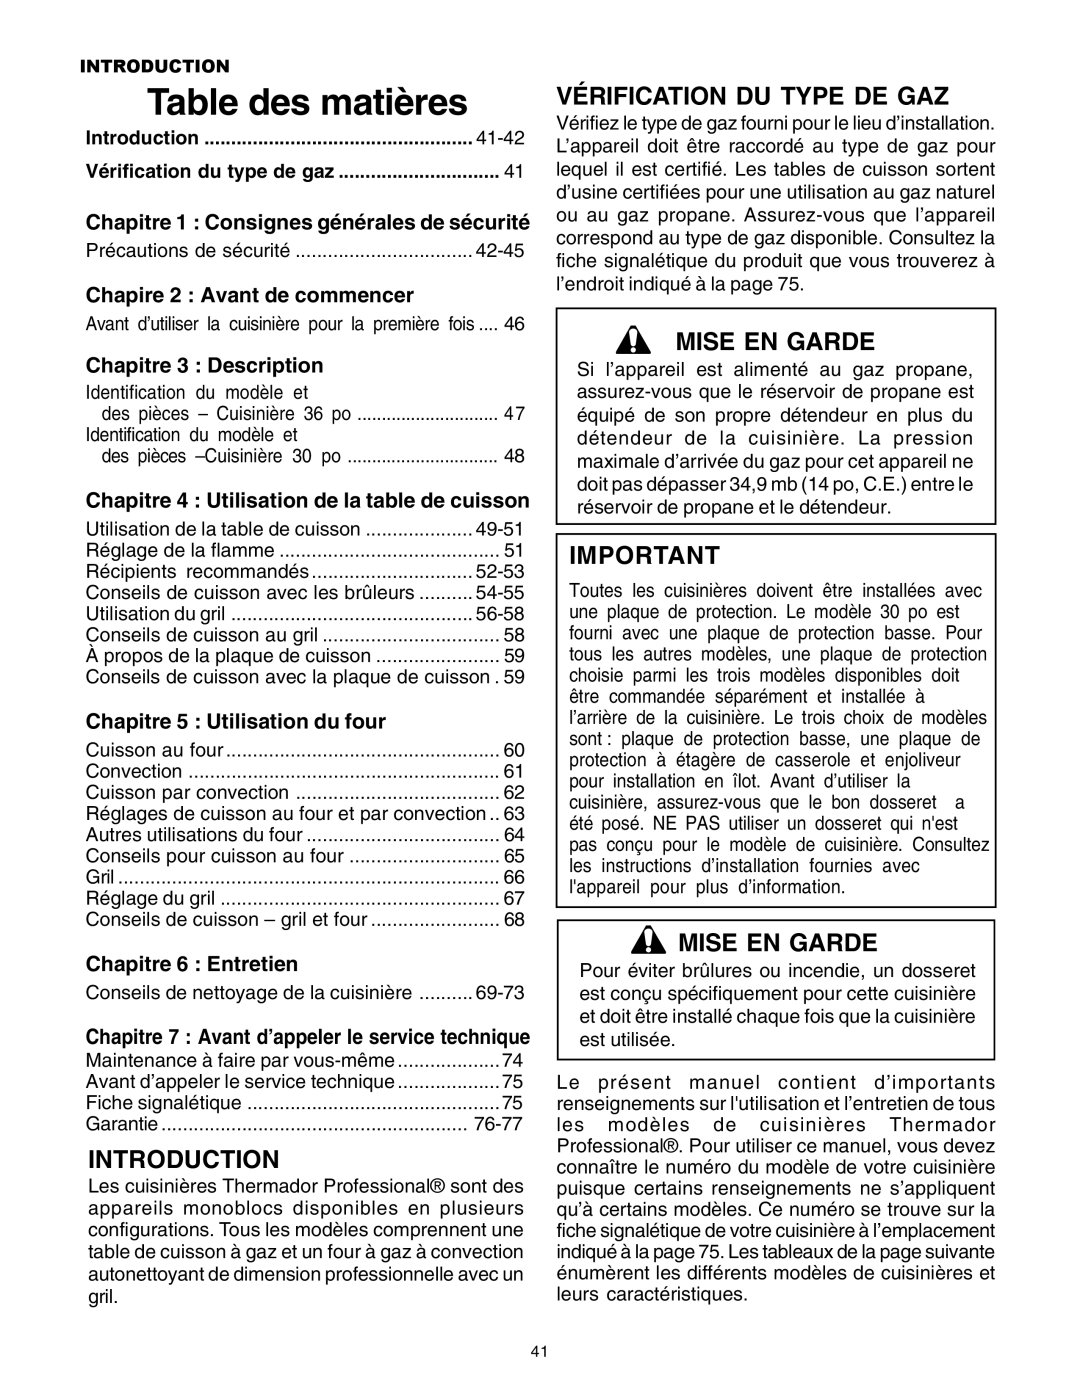 Thermador P30 P36 Table des matières, Vérification Du Type De Gaz, Mise En Garde, Chapire 2 Avant de commencer 